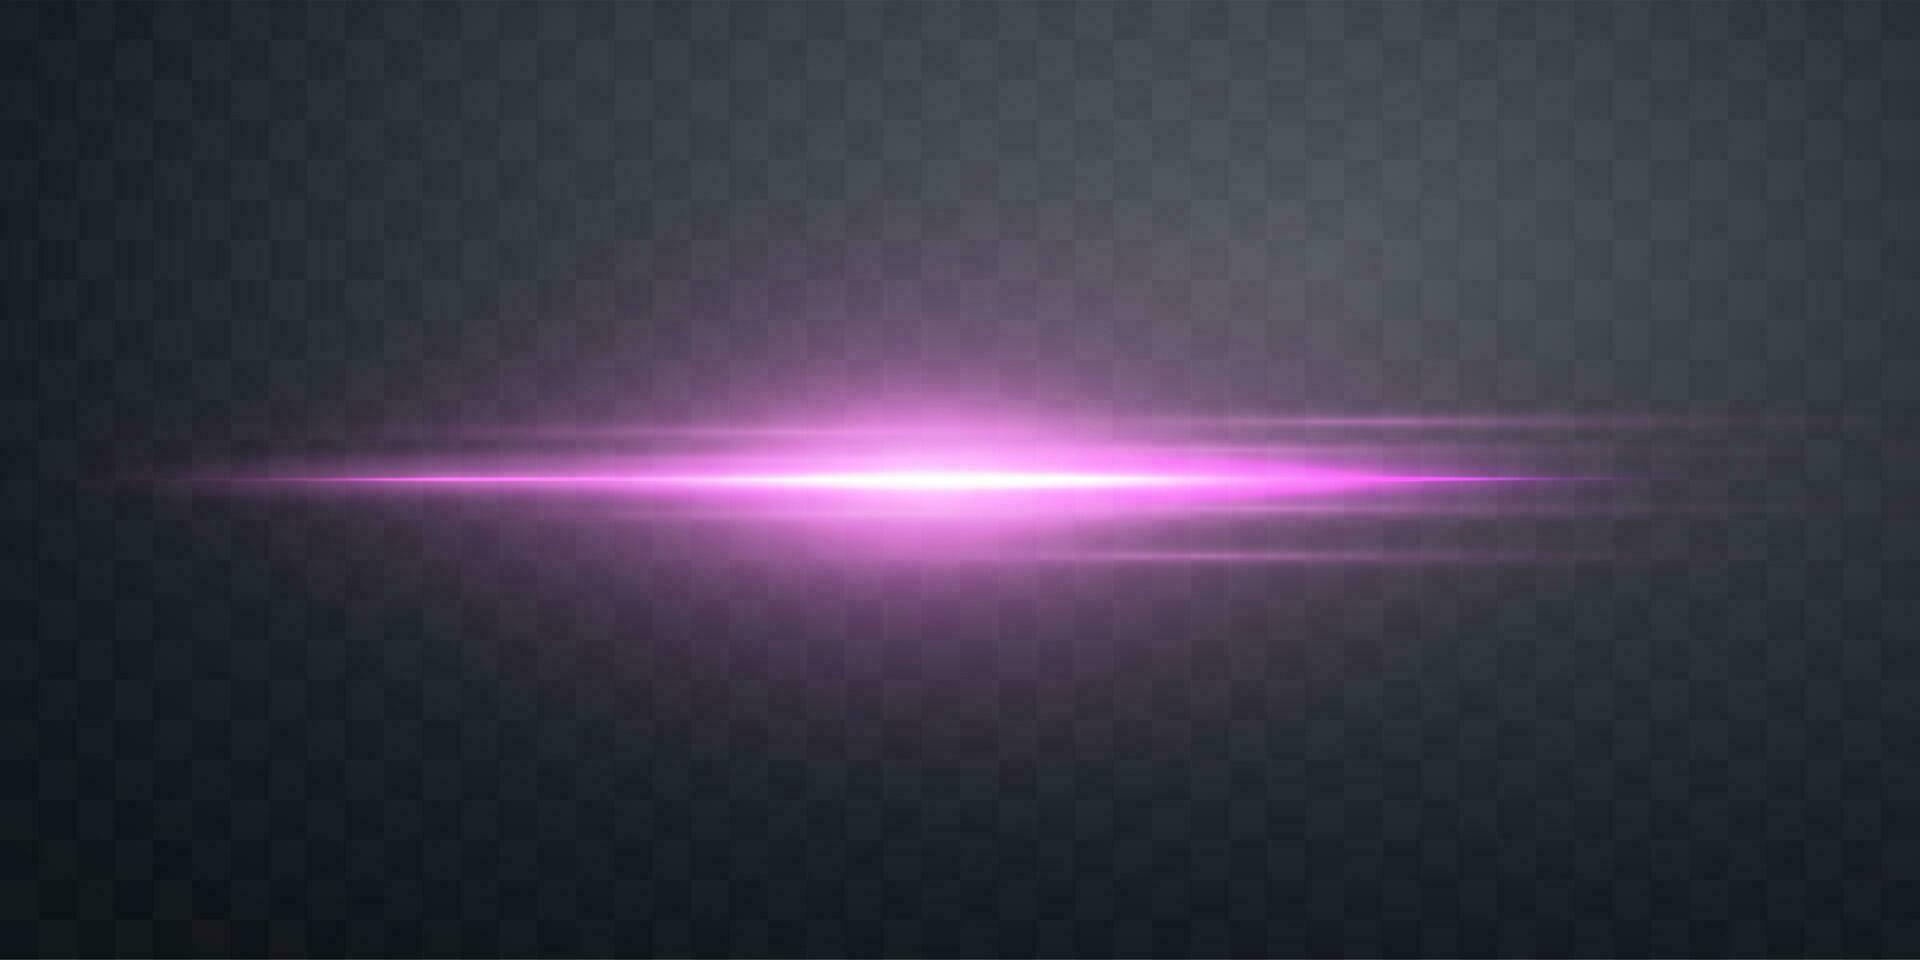 rosa orizzontale lensflare. leggero veloce con raggi riflettore. rosa splendore bagliore leggero effetto. vettore illustrazione.